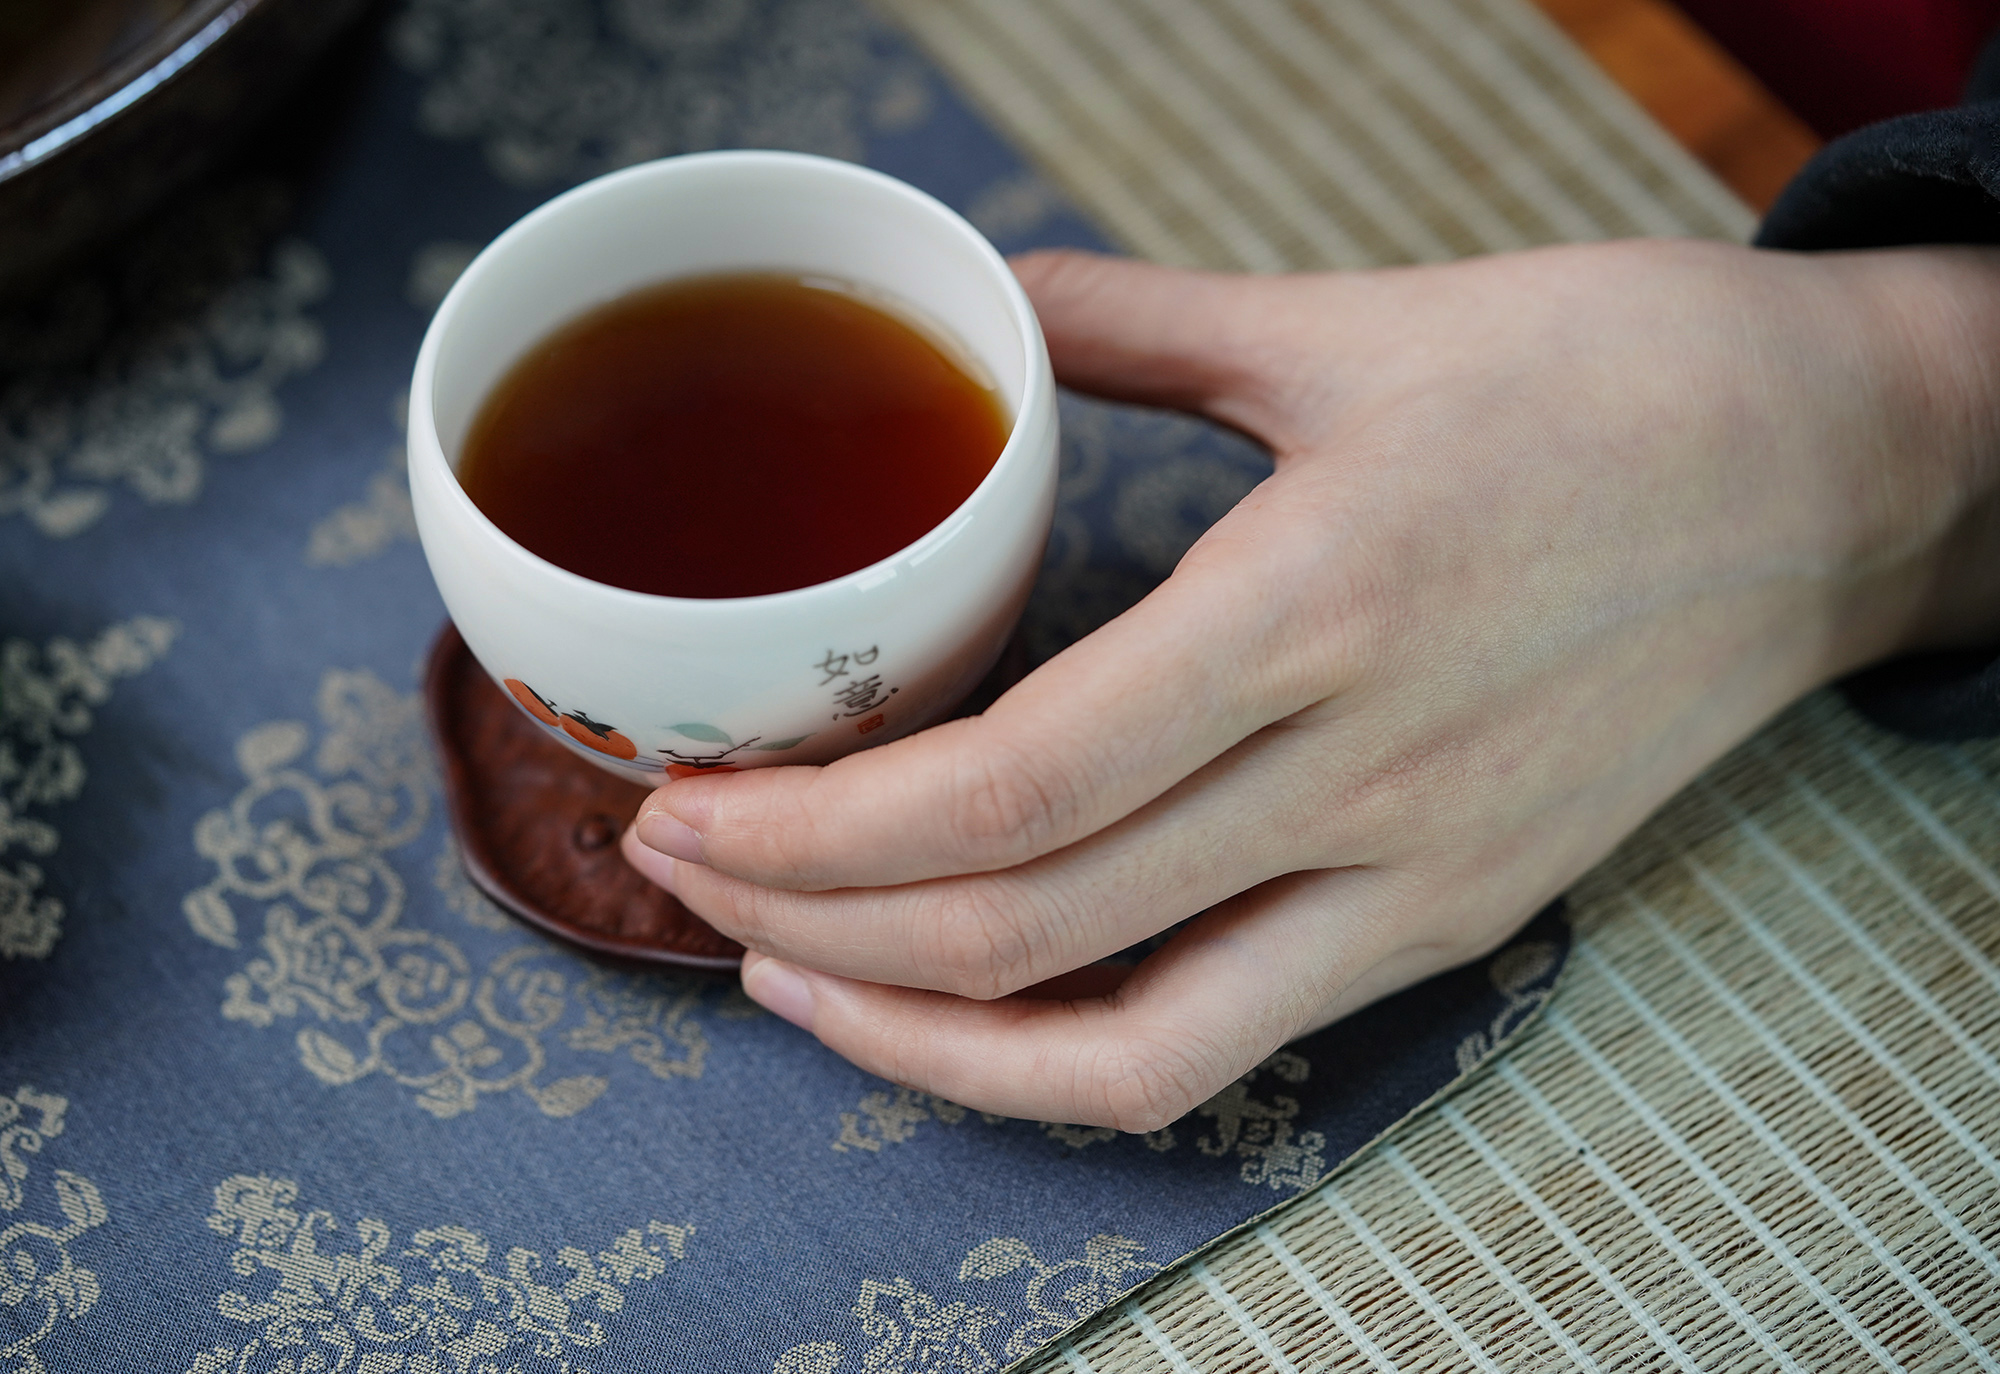 小喜年-同为传统饮品的茶与酒，都有哪些相似点？